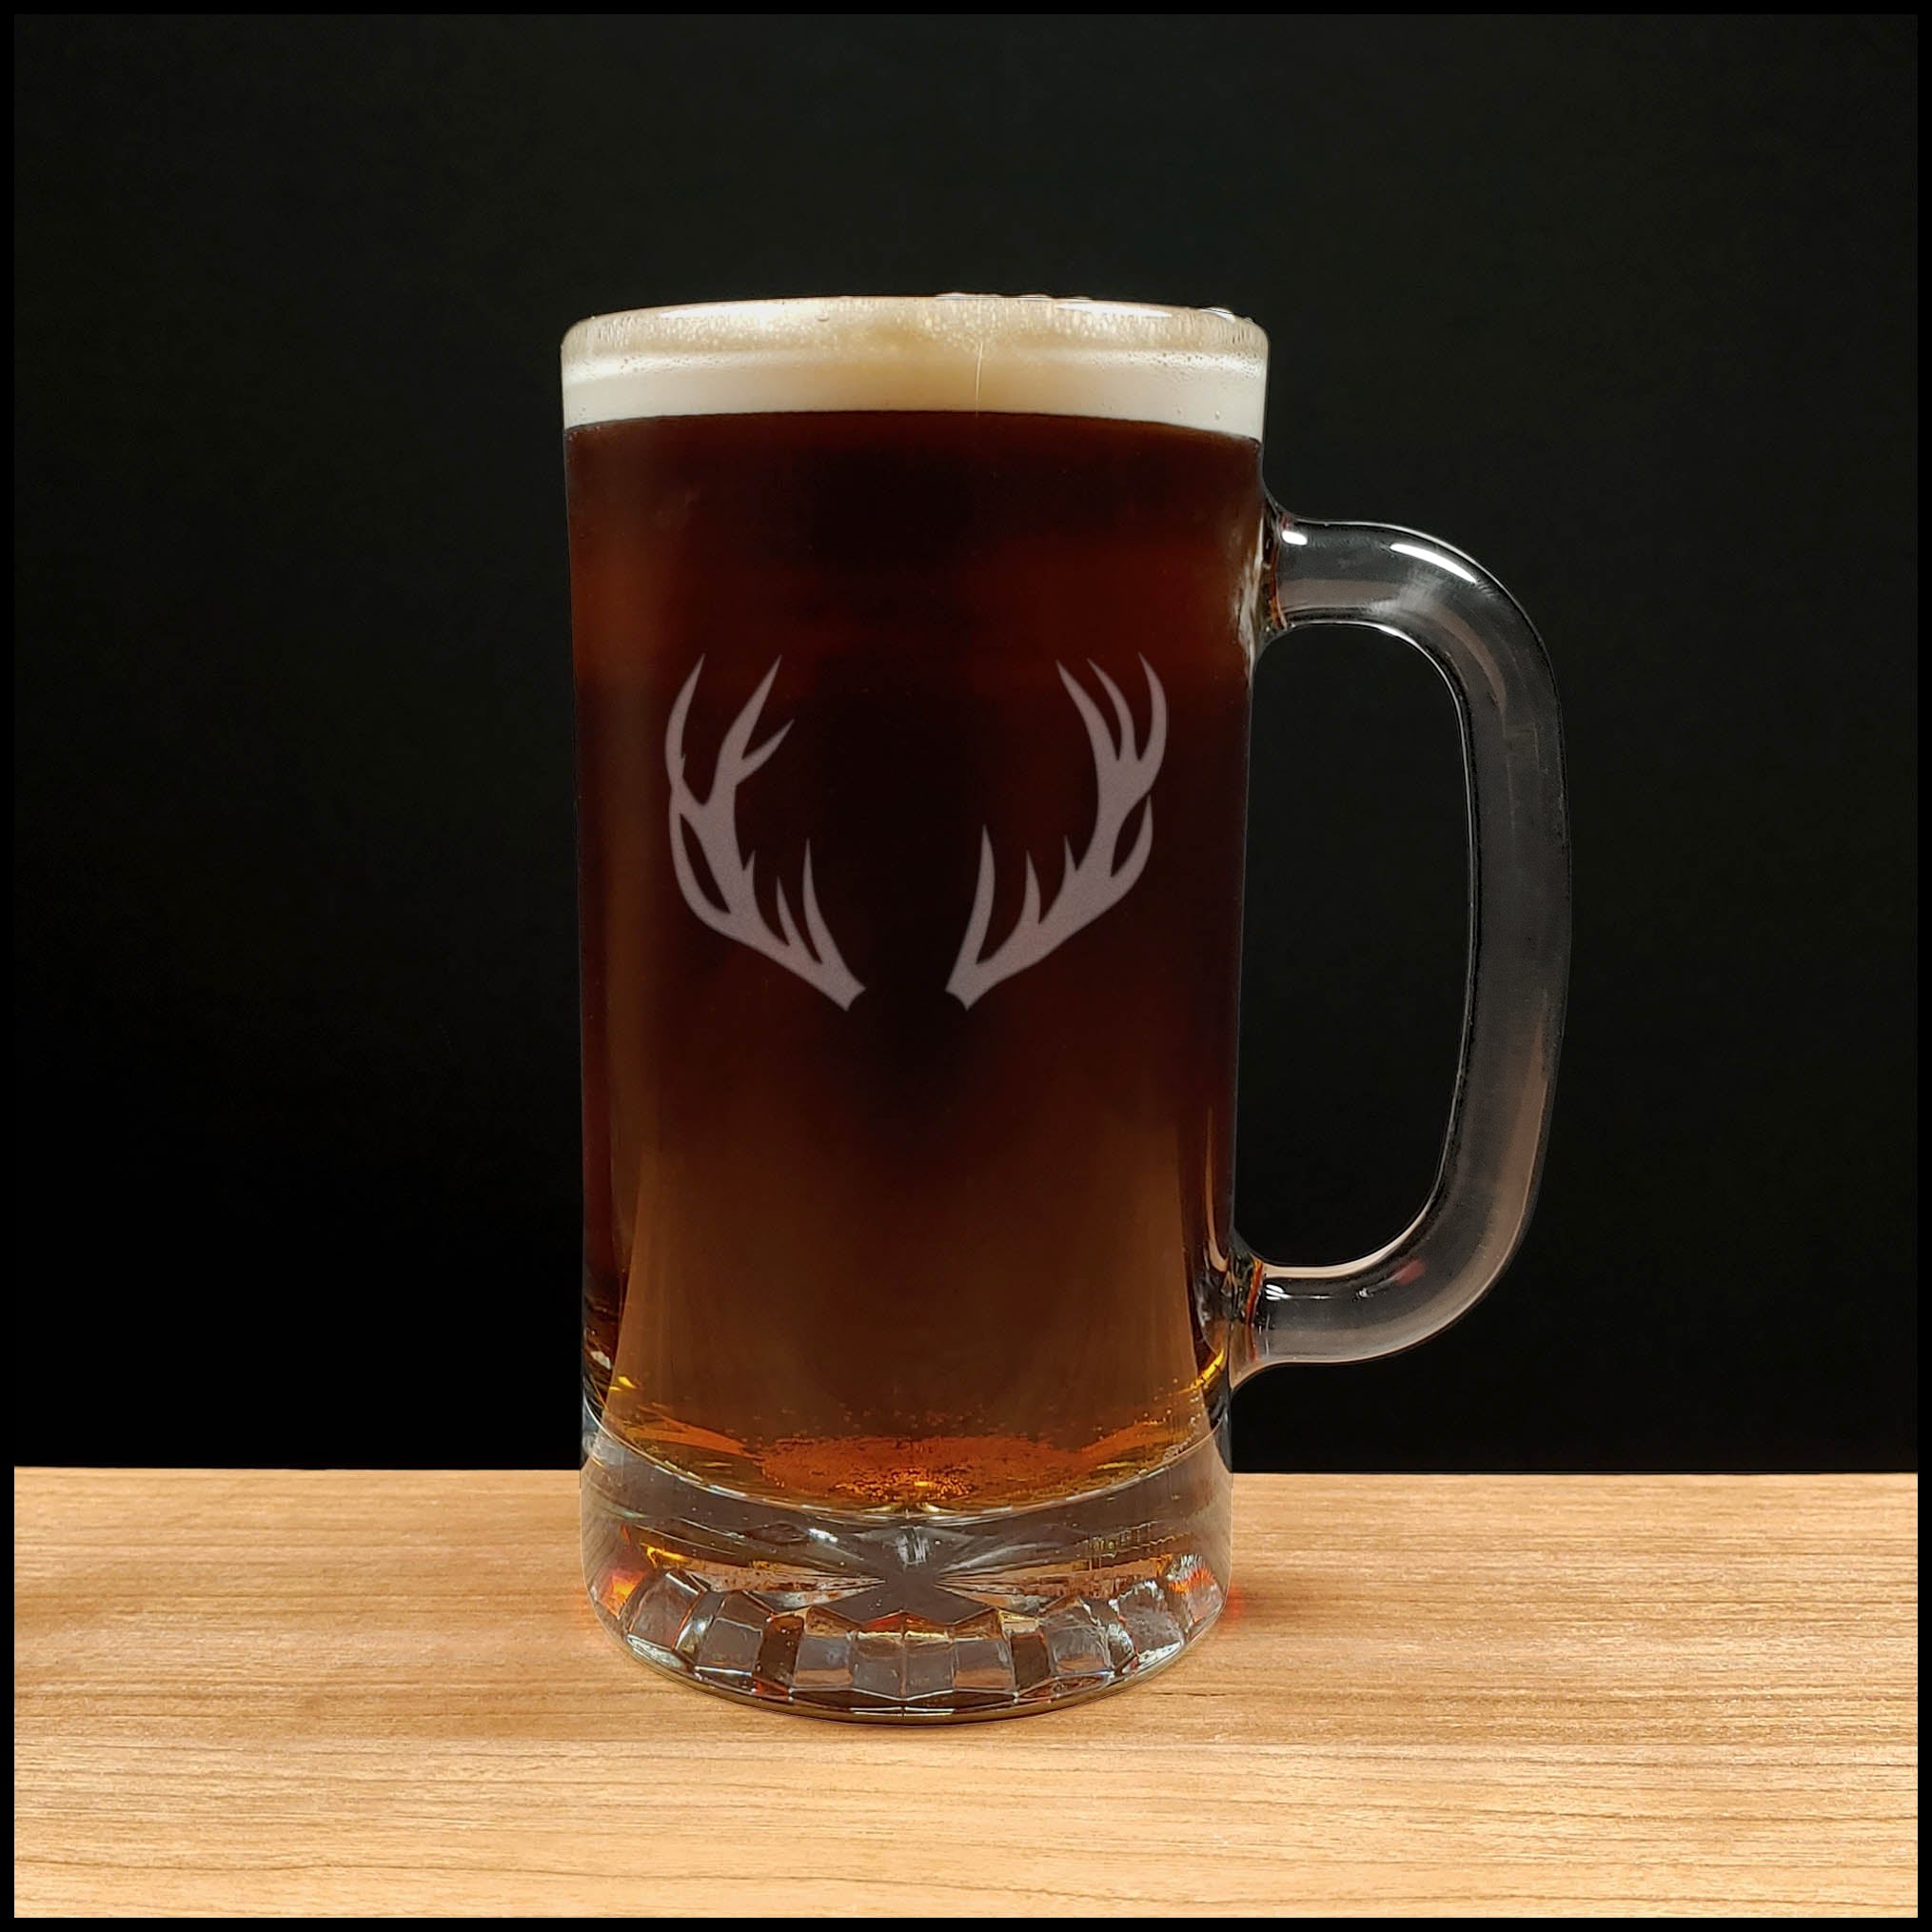 Deer Antlers Beer Mug with Dark Beer - Design 2 - Copyright Hues in Glass